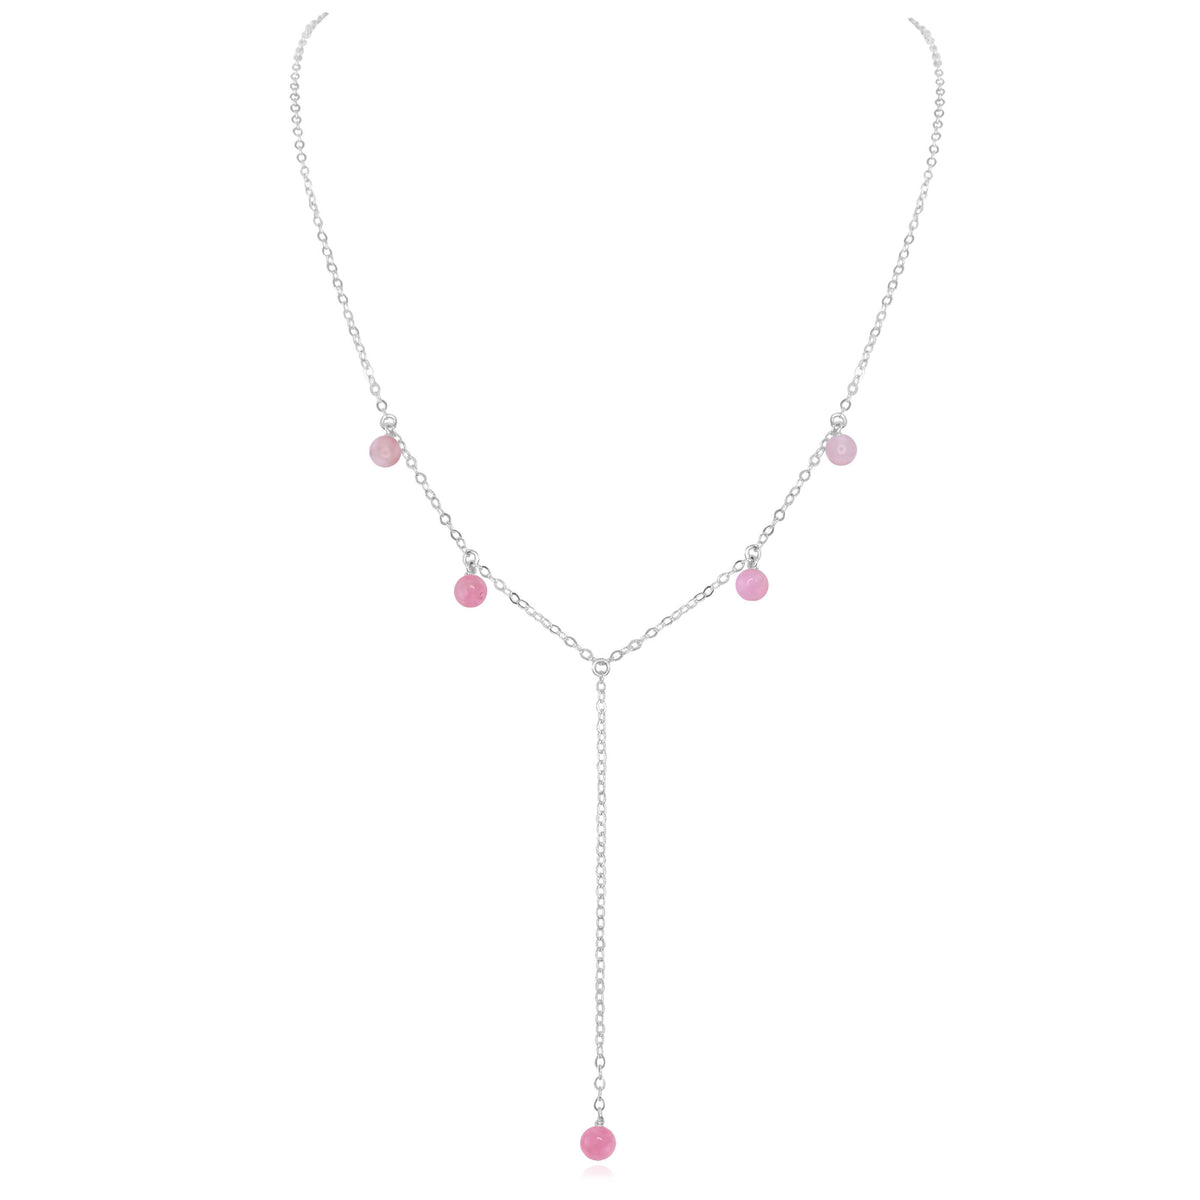 Boho Y Necklace - Pink Peruvian Opal - Sterling Silver - Luna Tide Handmade Jewellery